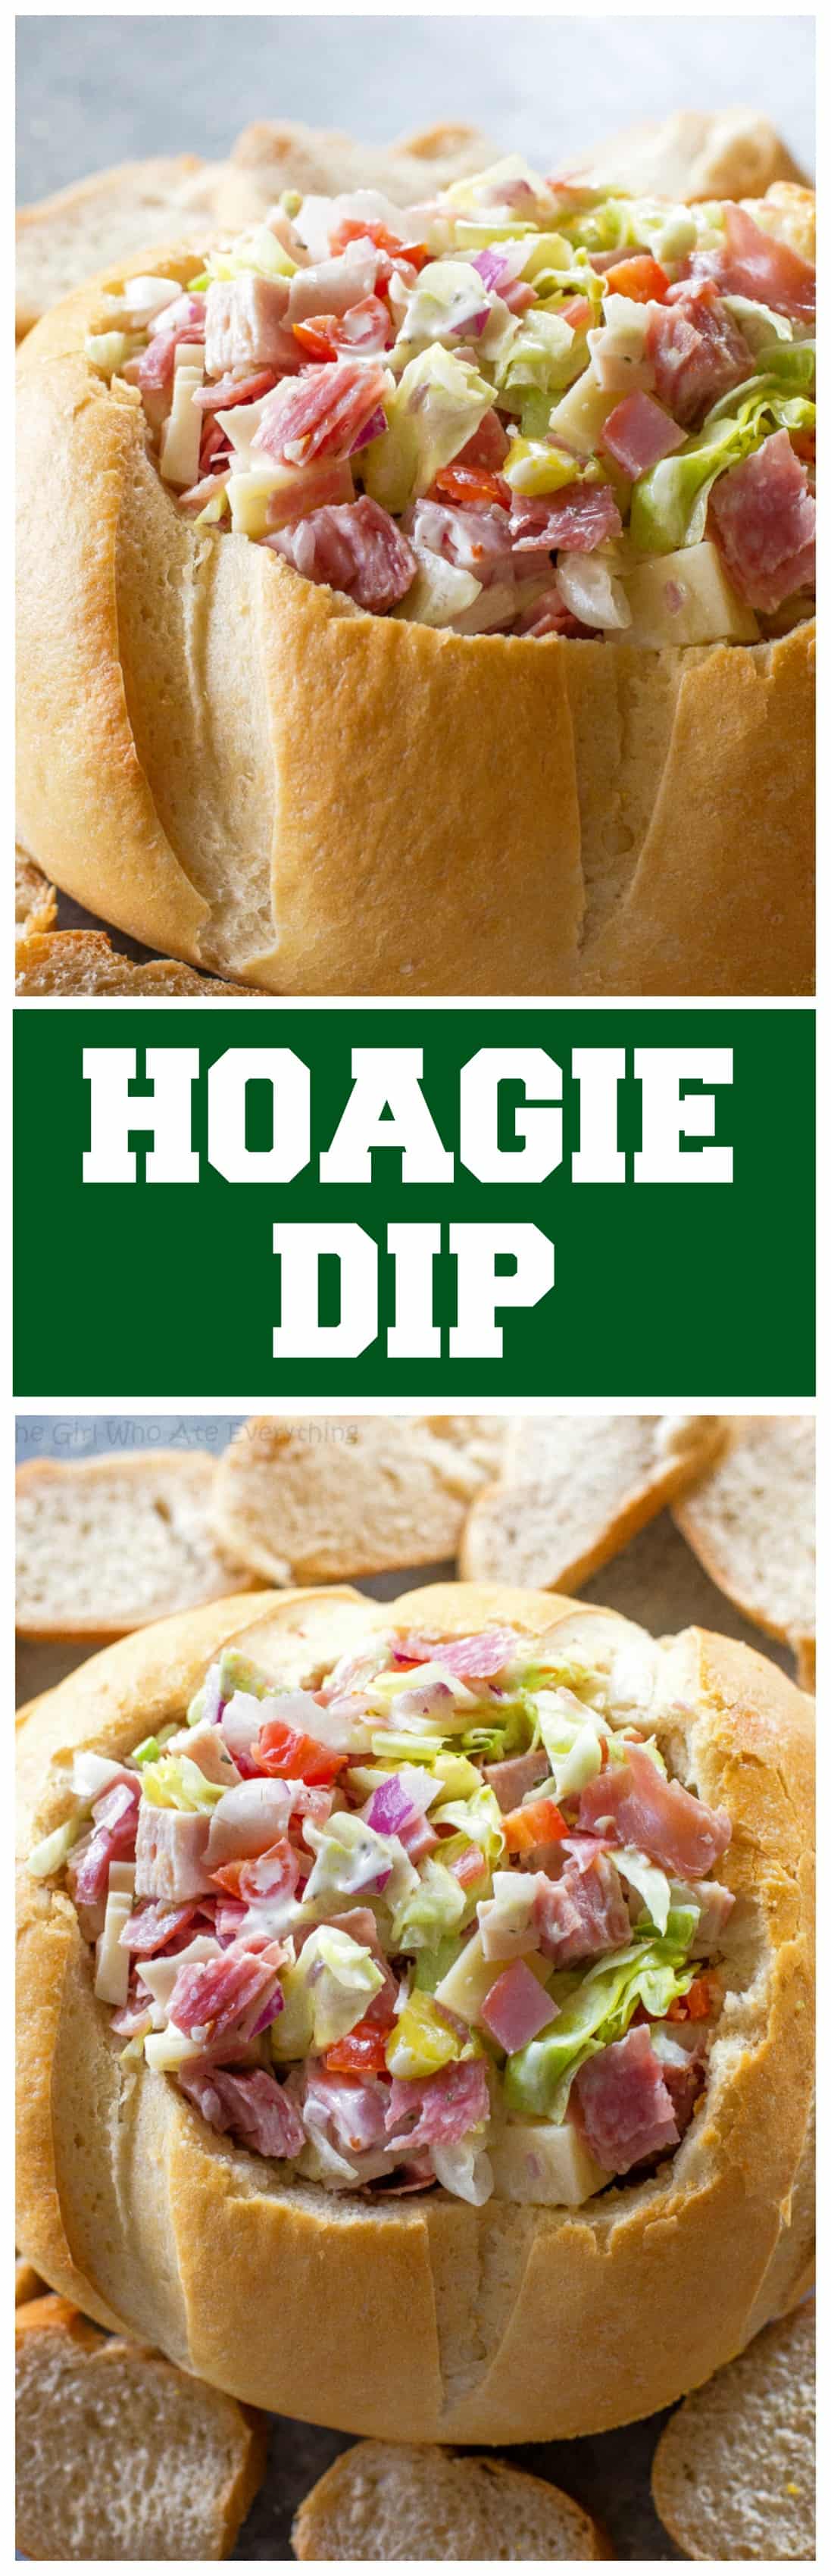 Esta receita Hoagie Dip tem gosto de um sanduíche secundário do Subway, mas em forma de molho.  Este aperitivo deveria realmente ser chamado de Hoagie Spread porque a melhor maneira de comê-lo é colocá-lo em cima de fatias de pão.  #appetizer #hoagie #bread #dip #subway #sandwich